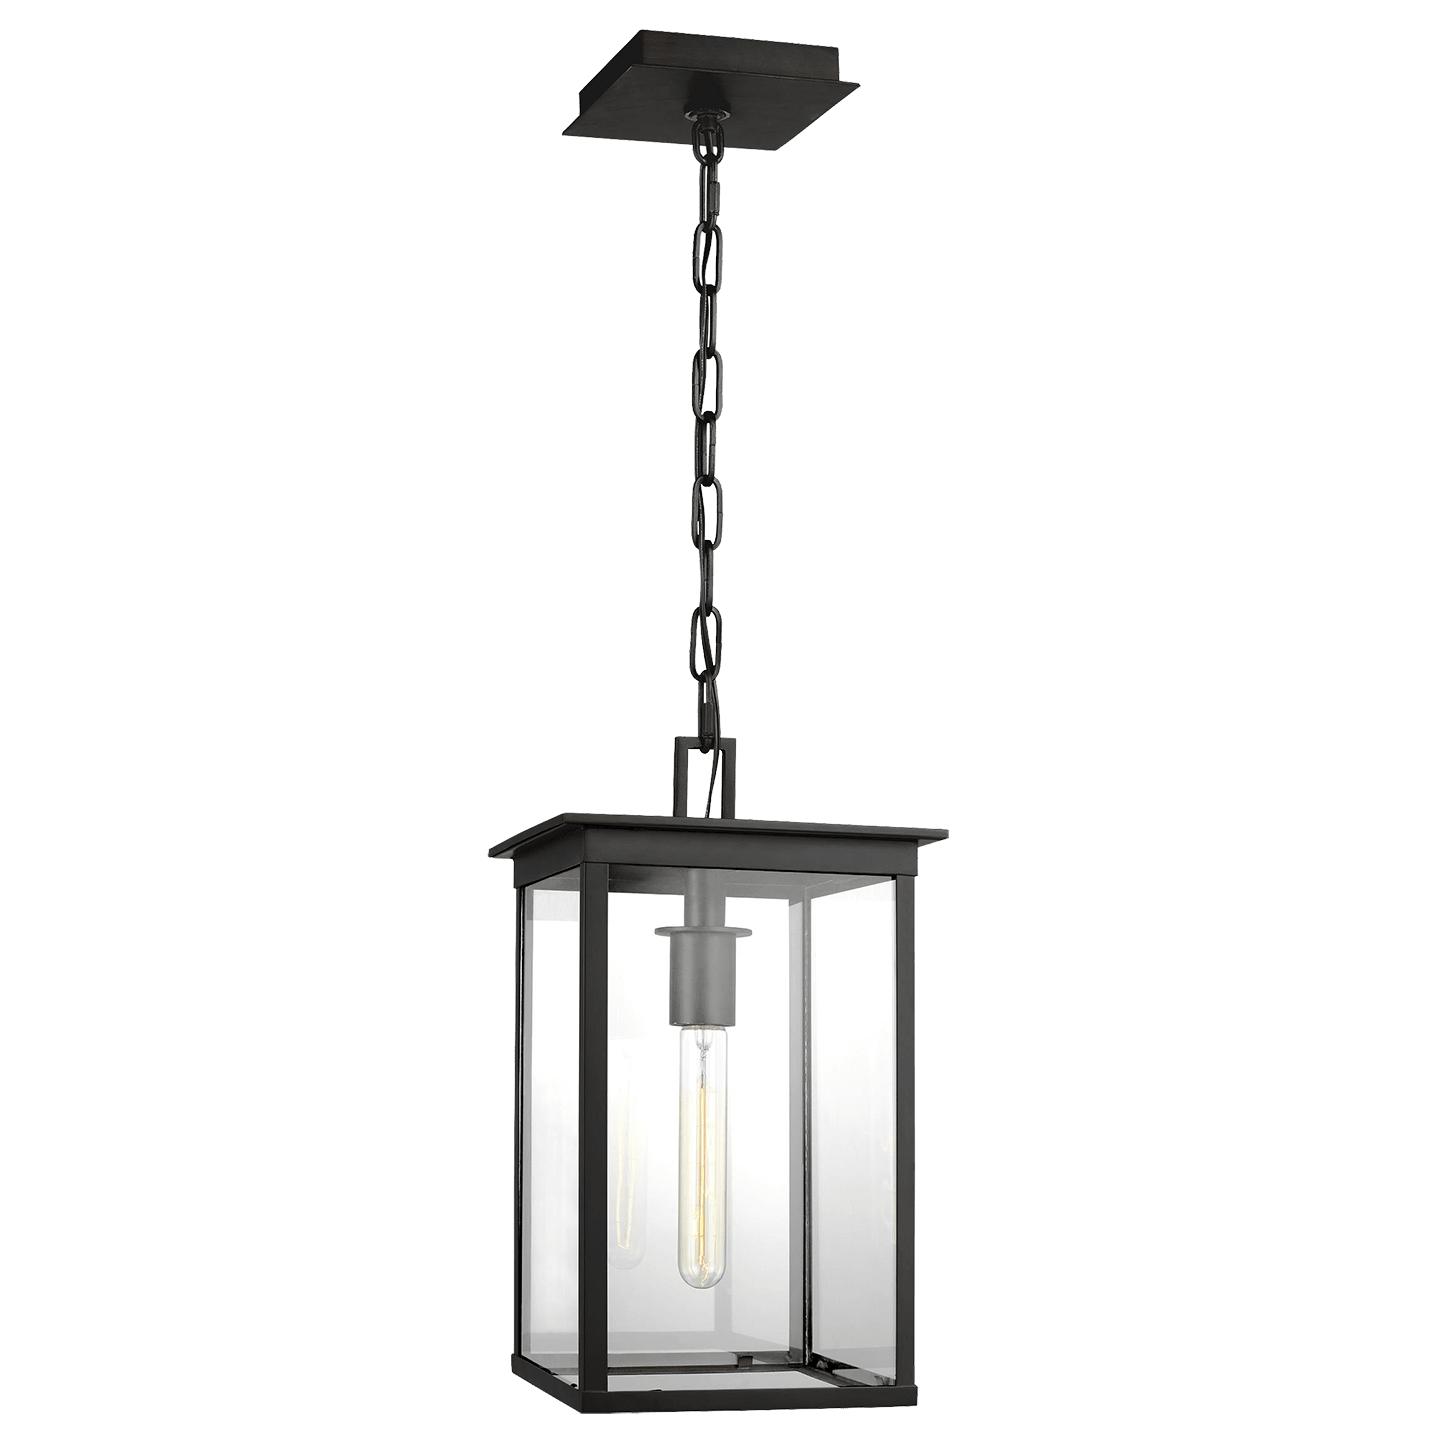 Купить Подвесной светильник Freeport Small Outdoor Hanging Lantern в интернет-магазине roooms.ru